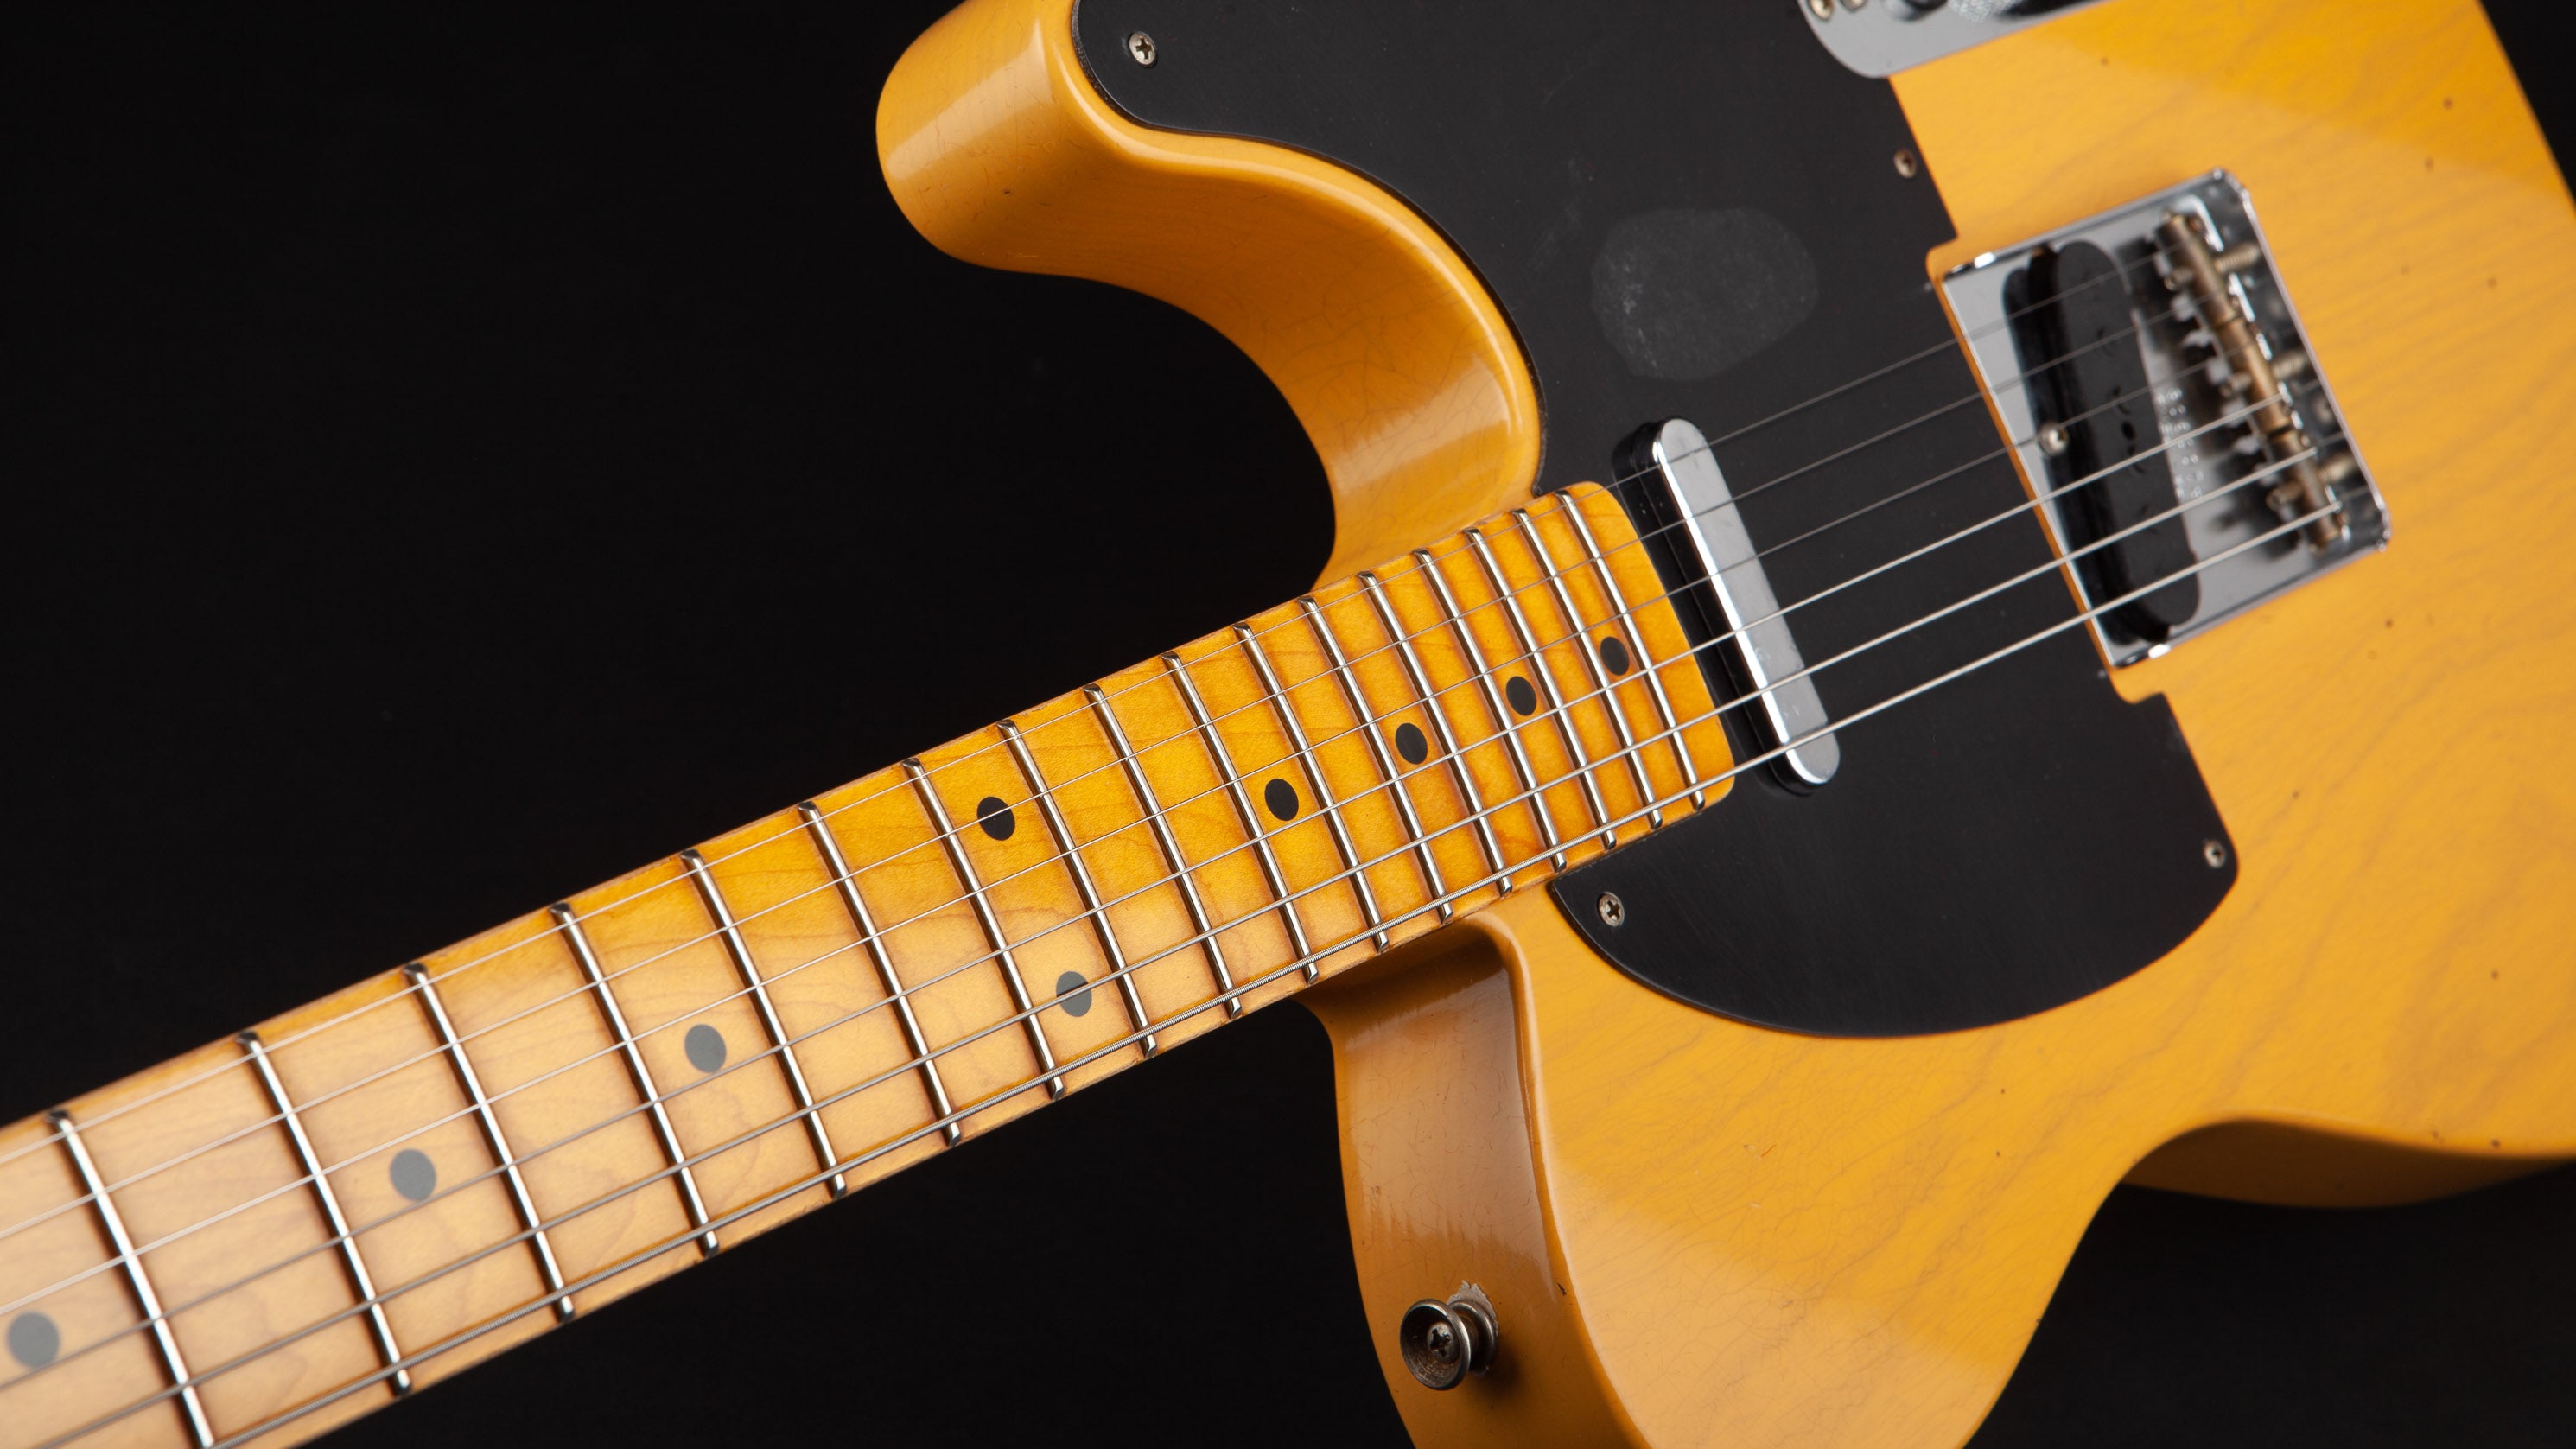 Fender Custom Shop: 52 Telecaster Butterscotch Journeyman #R100908